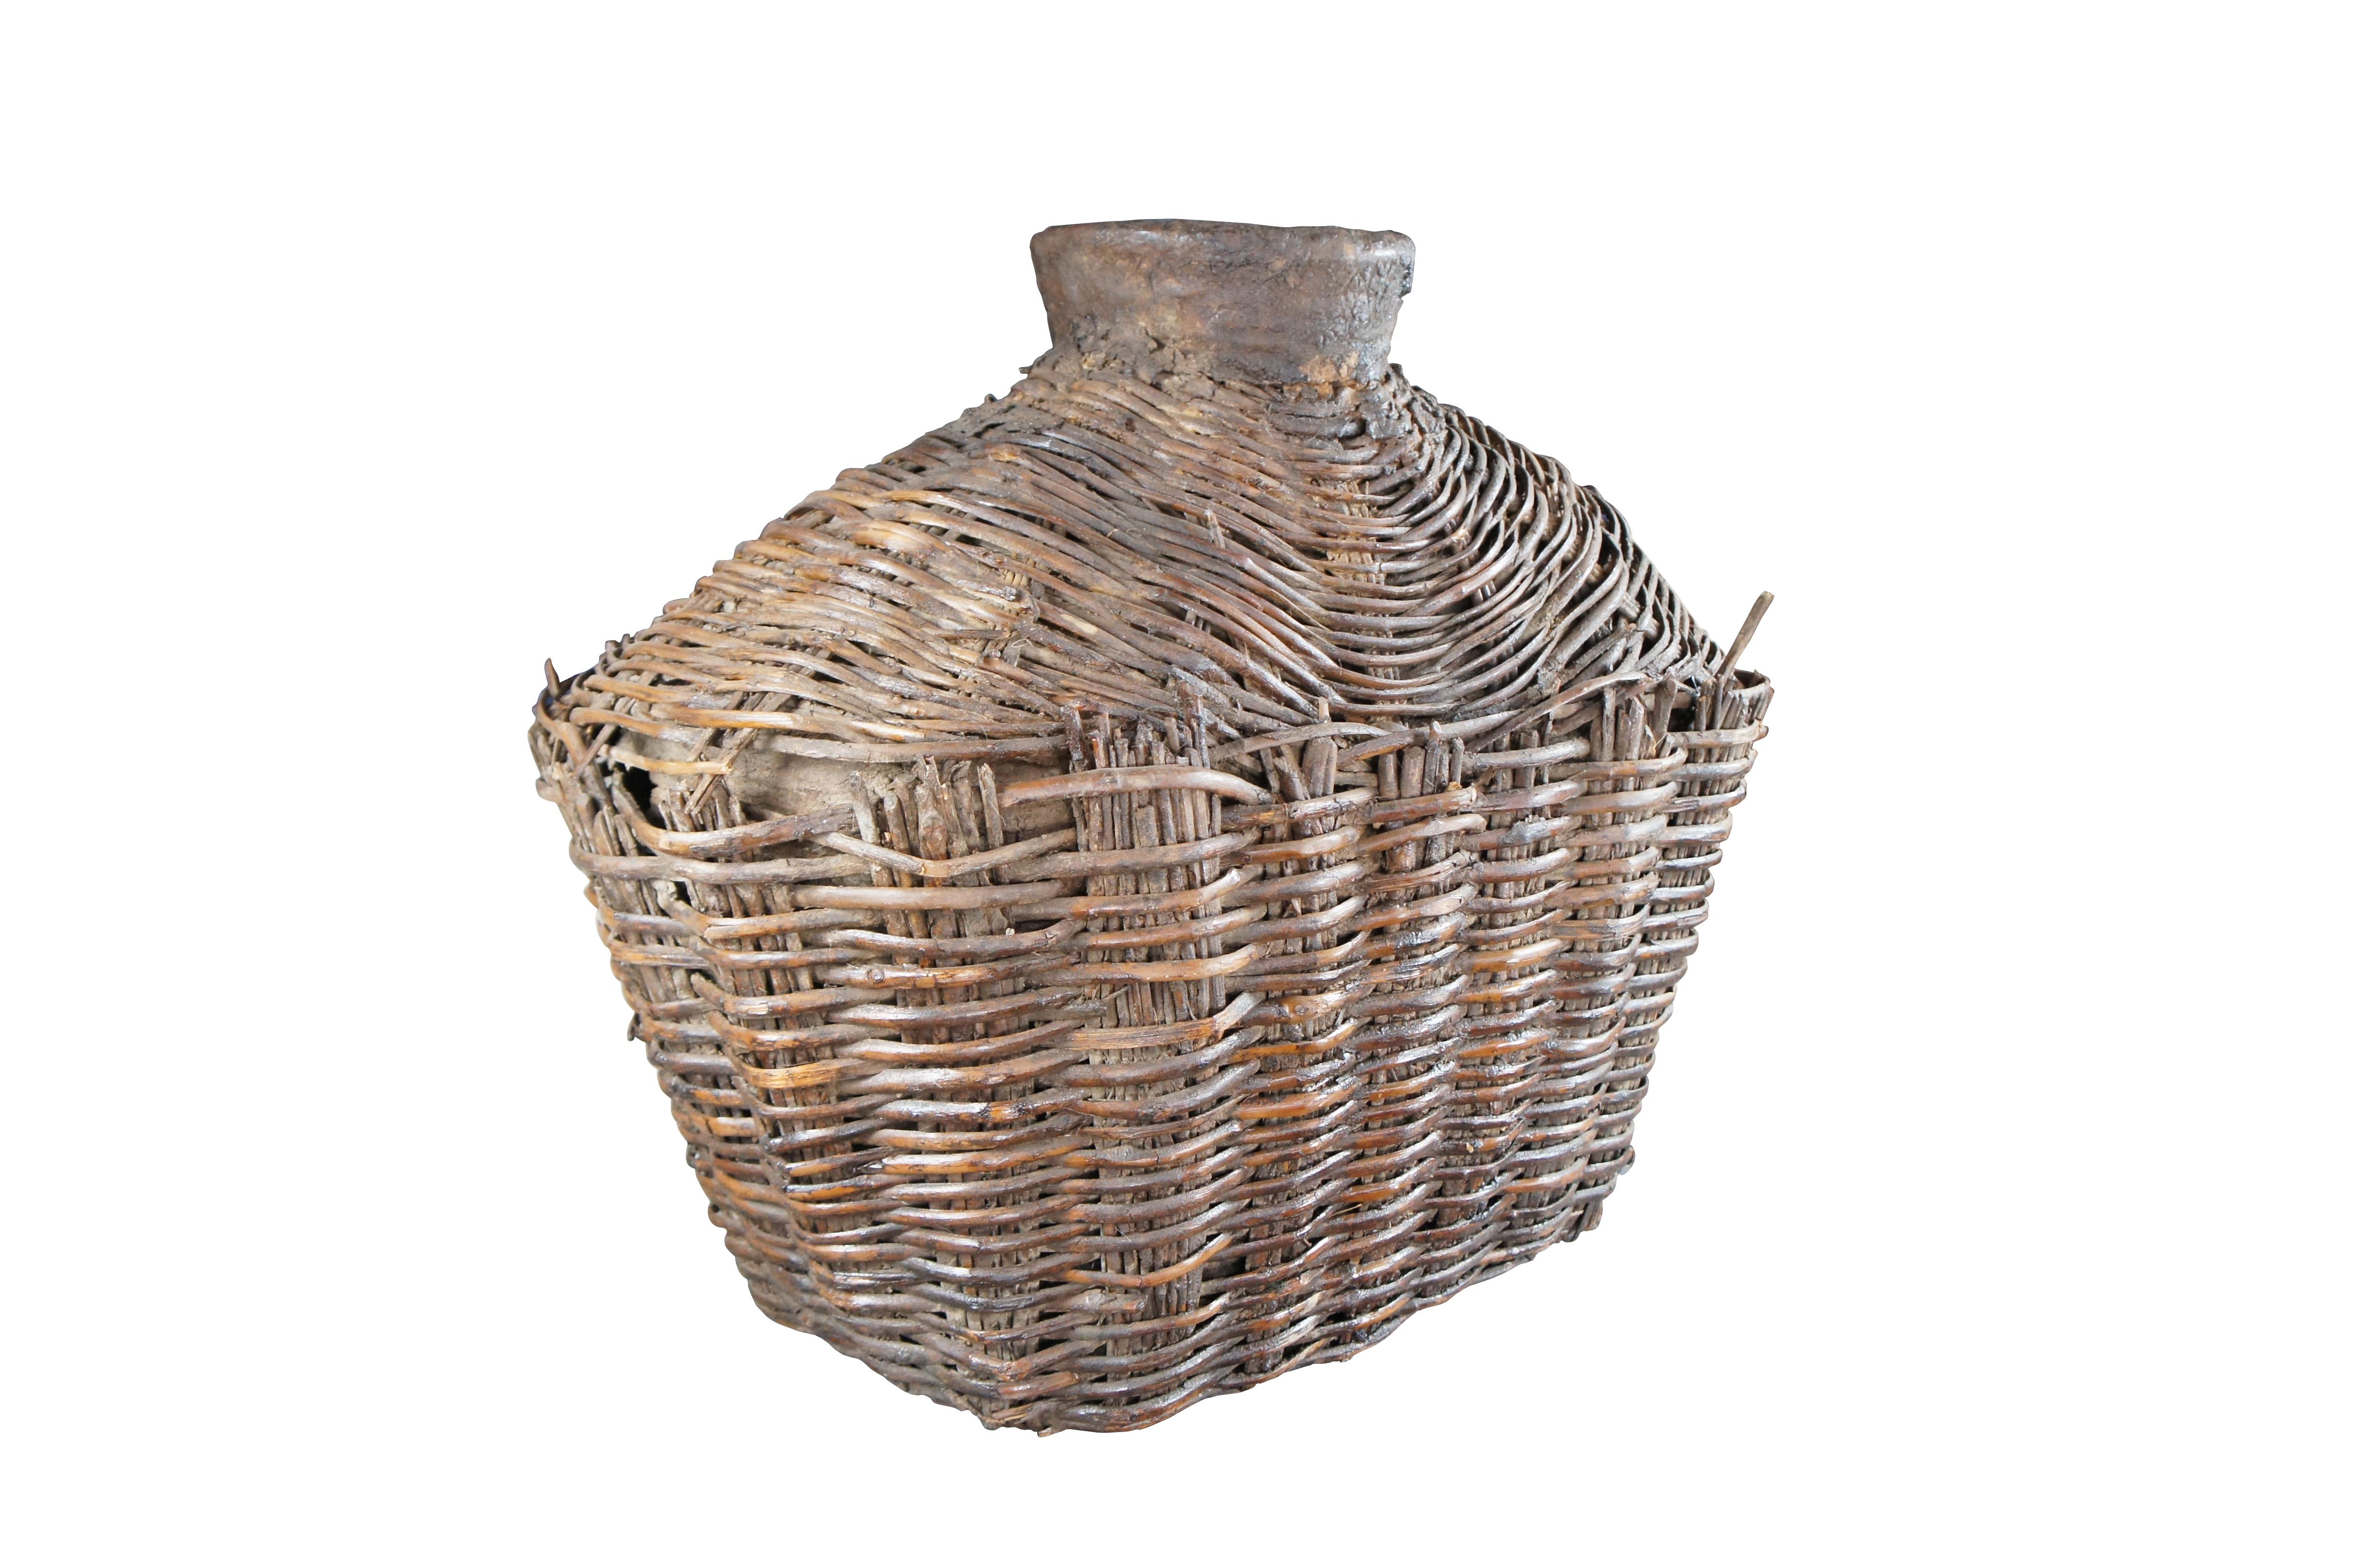 Anfang des 20. Jahrhunderts Chinesisch Shanxi Willow Oil Container / Food Storage Vessel. Wunderschön gewebt mit natürlicher Patina aus jahrelangem Gebrauch. Ein ungewöhnliches, aber perfektes Dekorationsstück für eine Ecke, ein Bücherregal oder